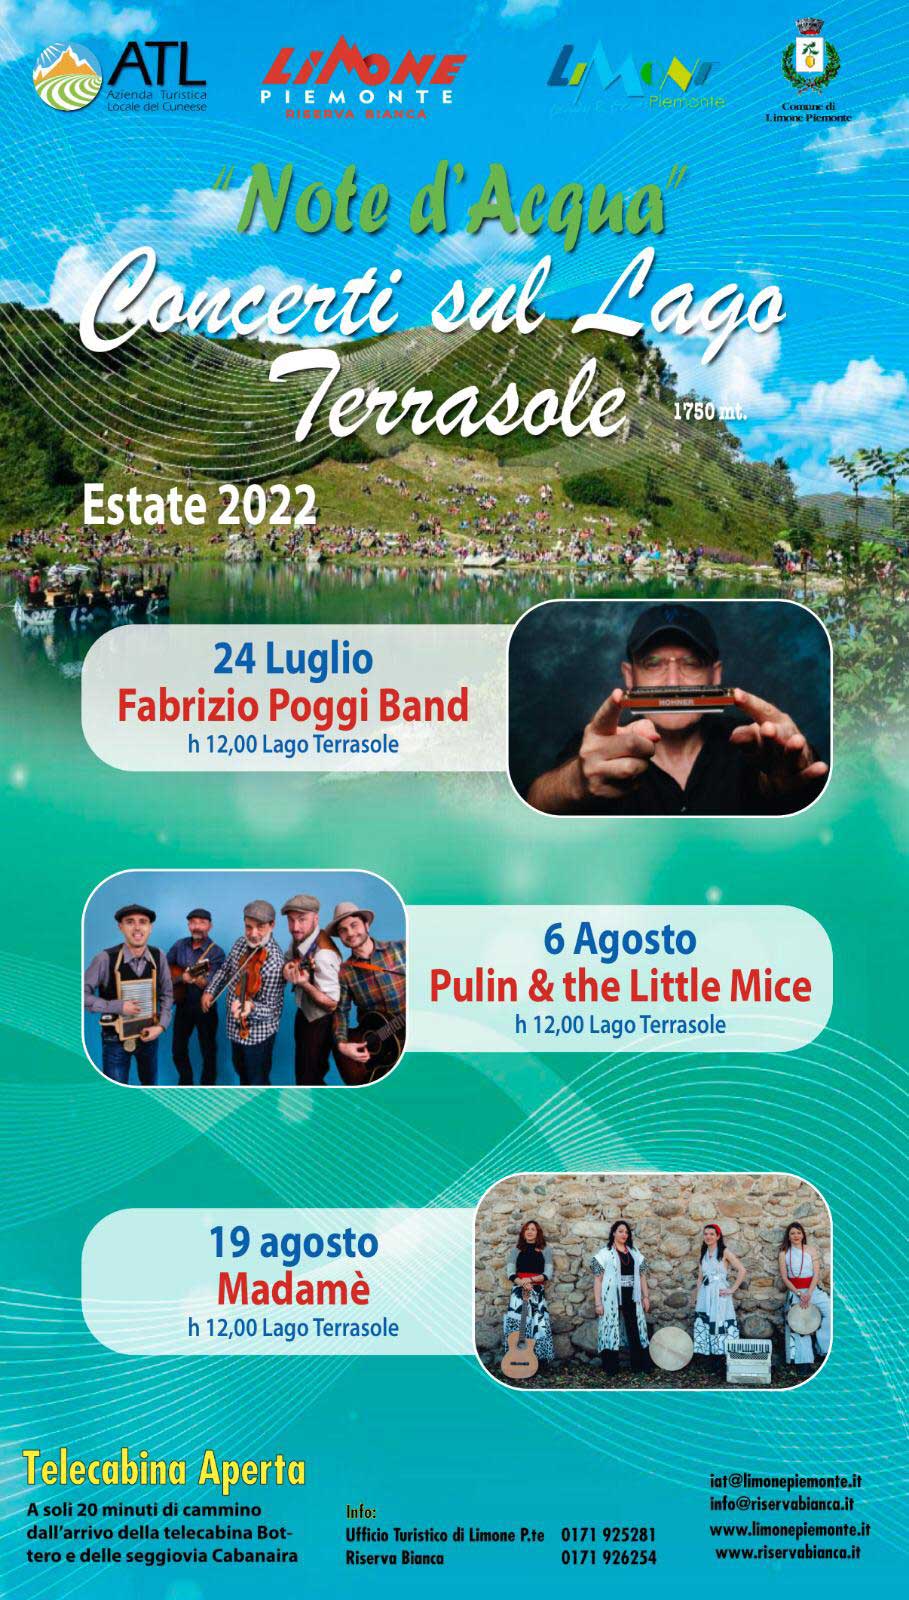 Concerti sul lago Terrasole - Stagione 2022